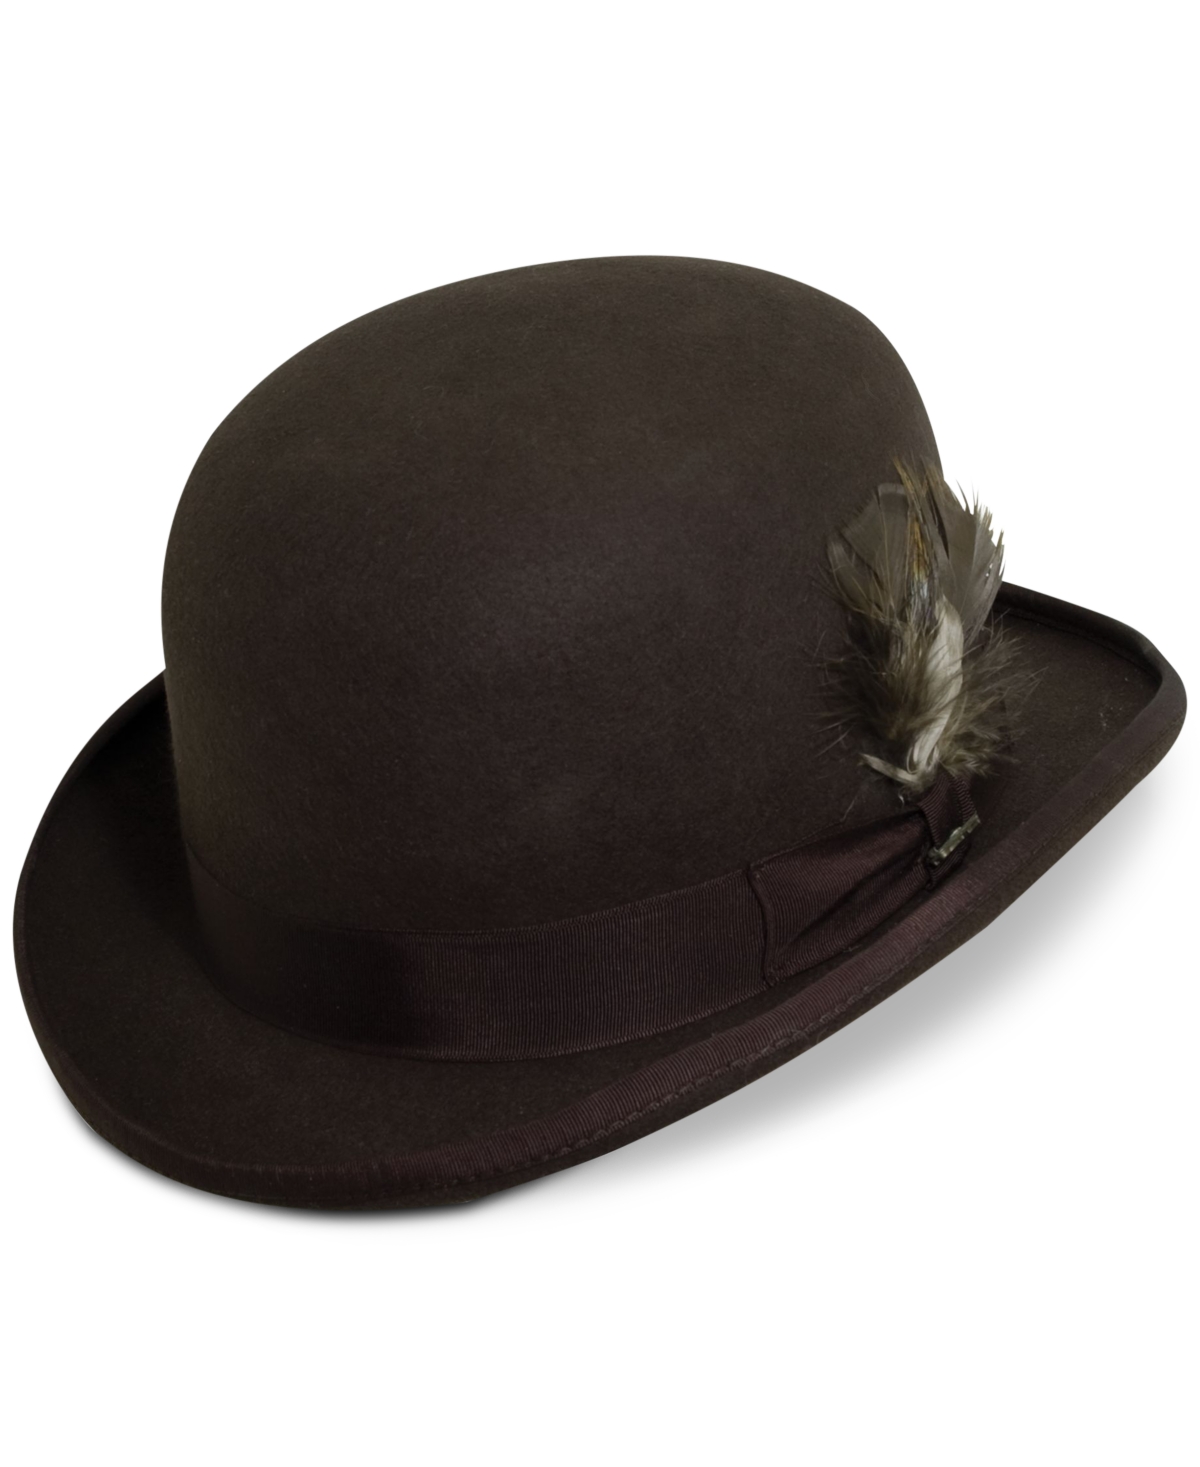 Men's Wool Derby Hat - Char